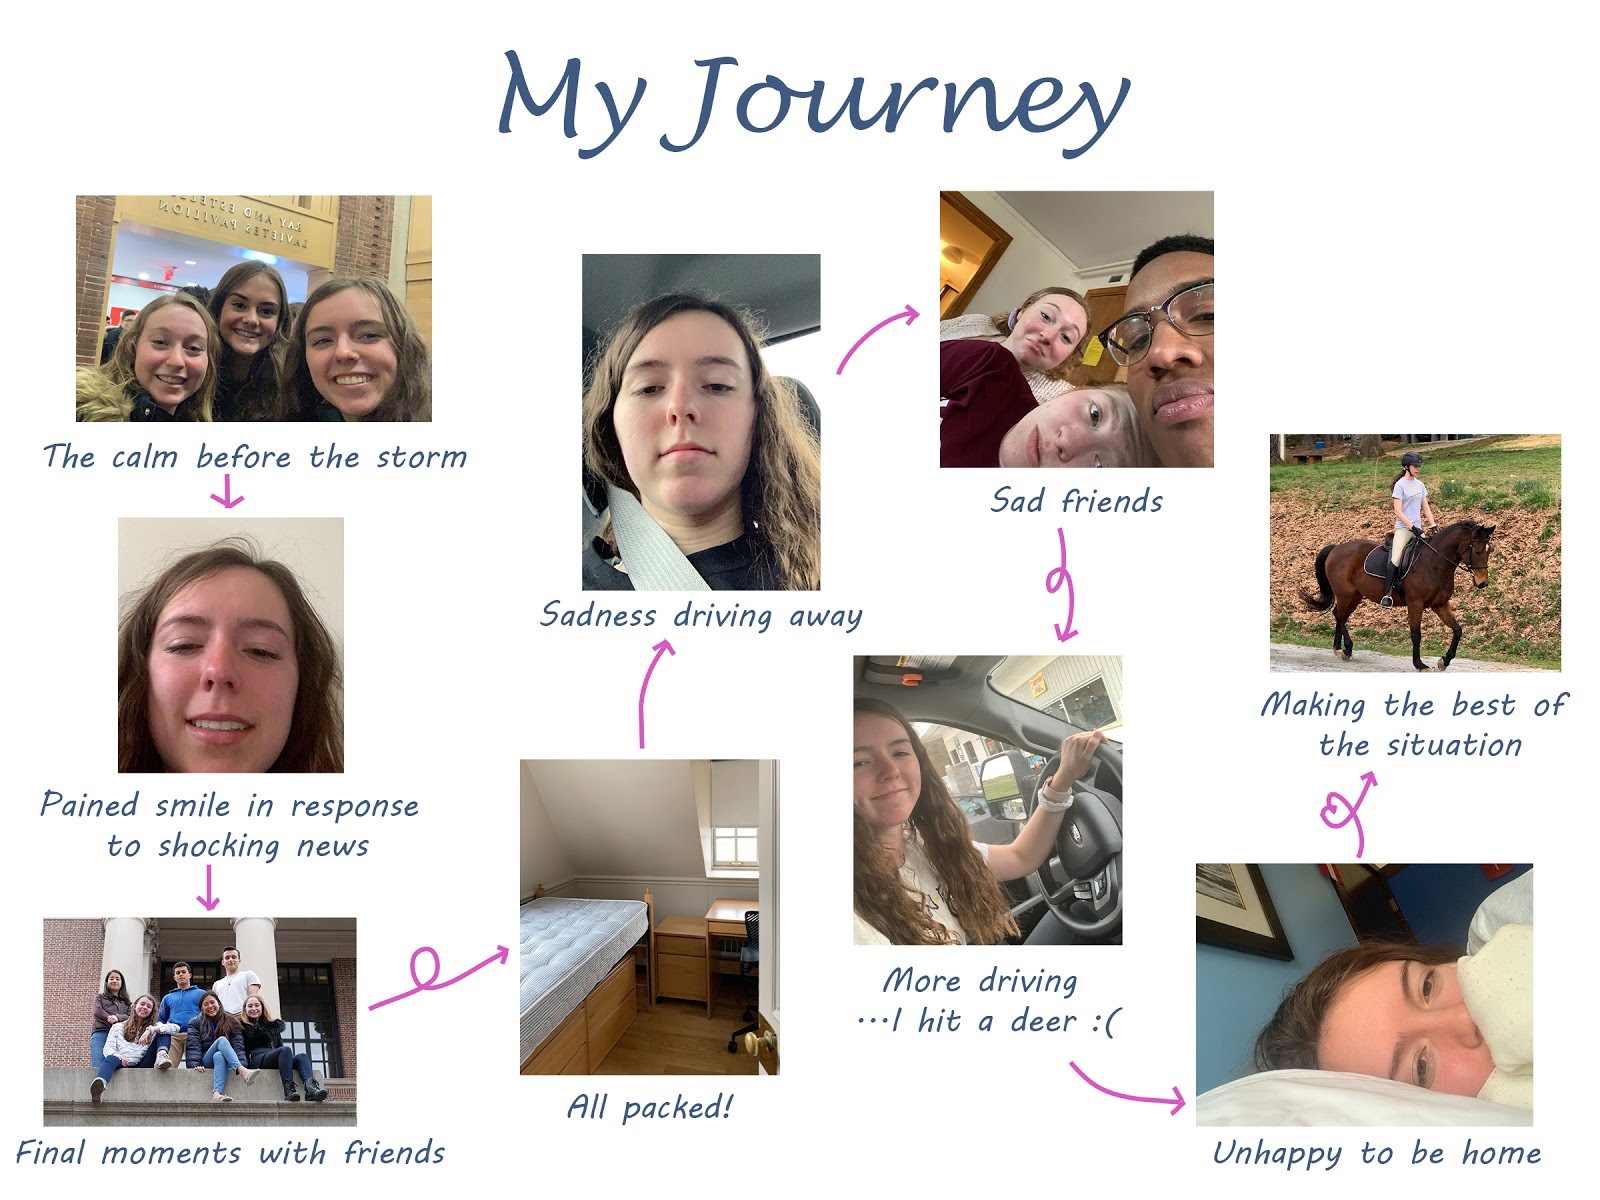 My journey